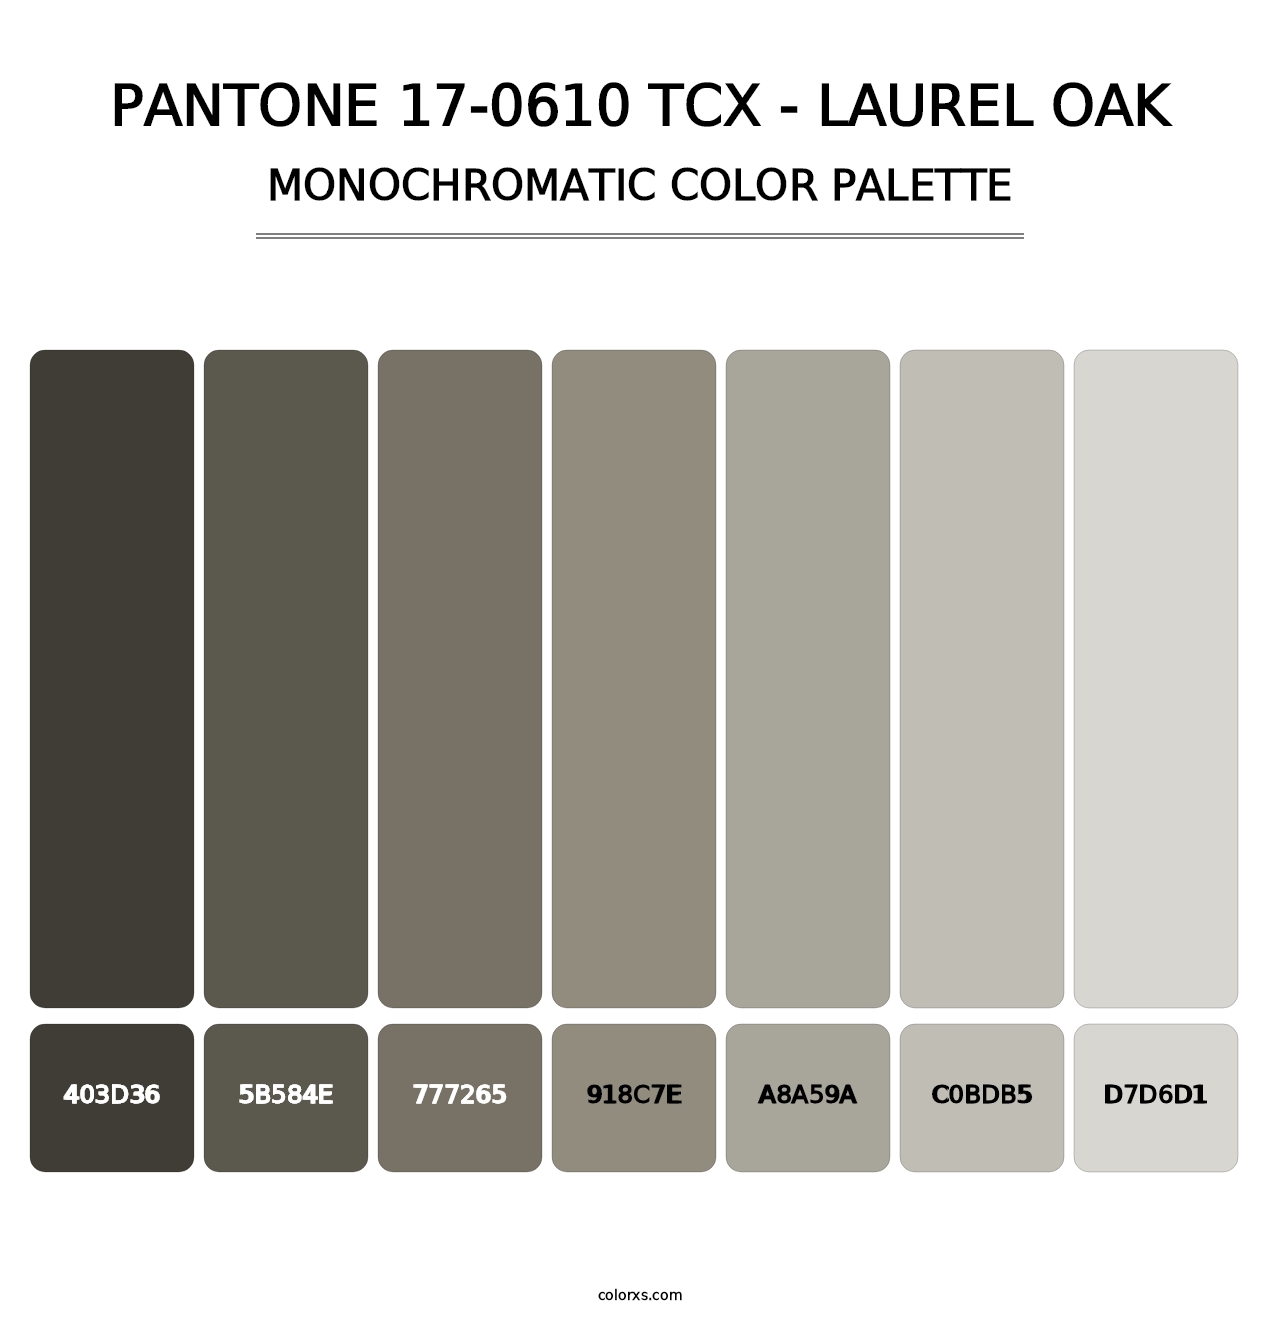 PANTONE 17-0610 TCX - Laurel Oak - Monochromatic Color Palette